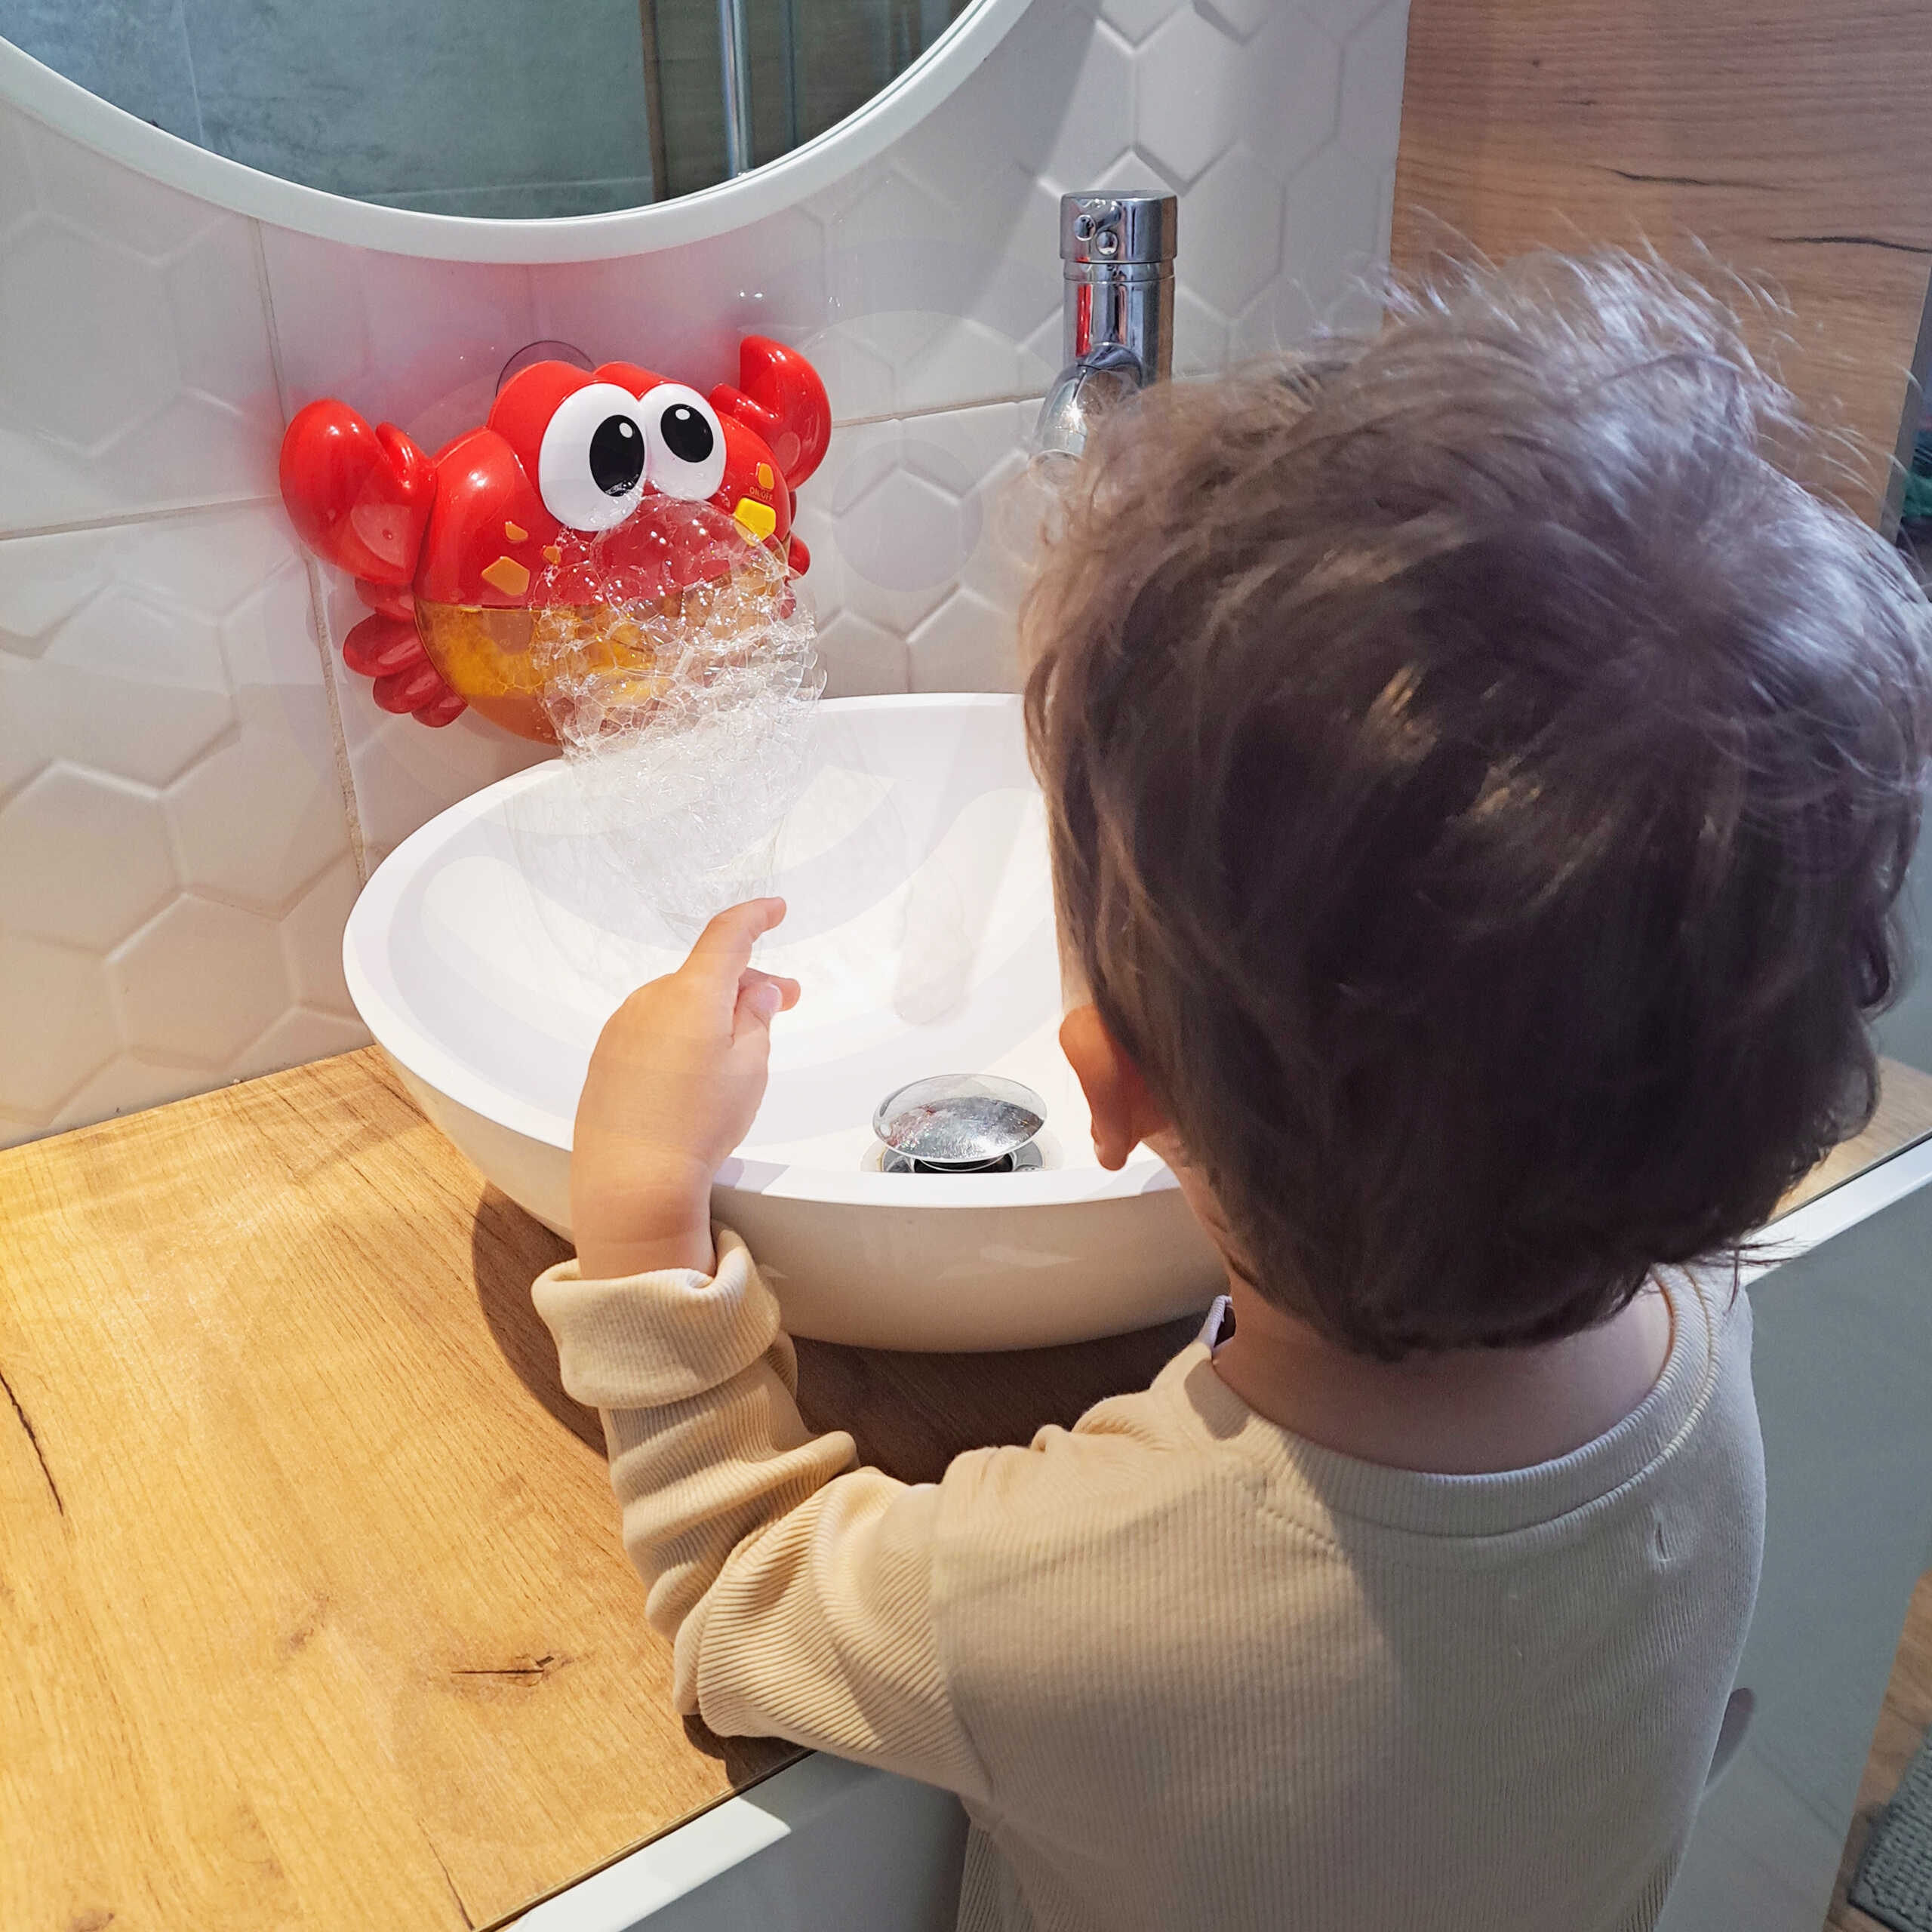 Baby zabawka do kąpieli krab do robienia piany z melodią - 3 szt., zabawka dla dzieci, Woopie